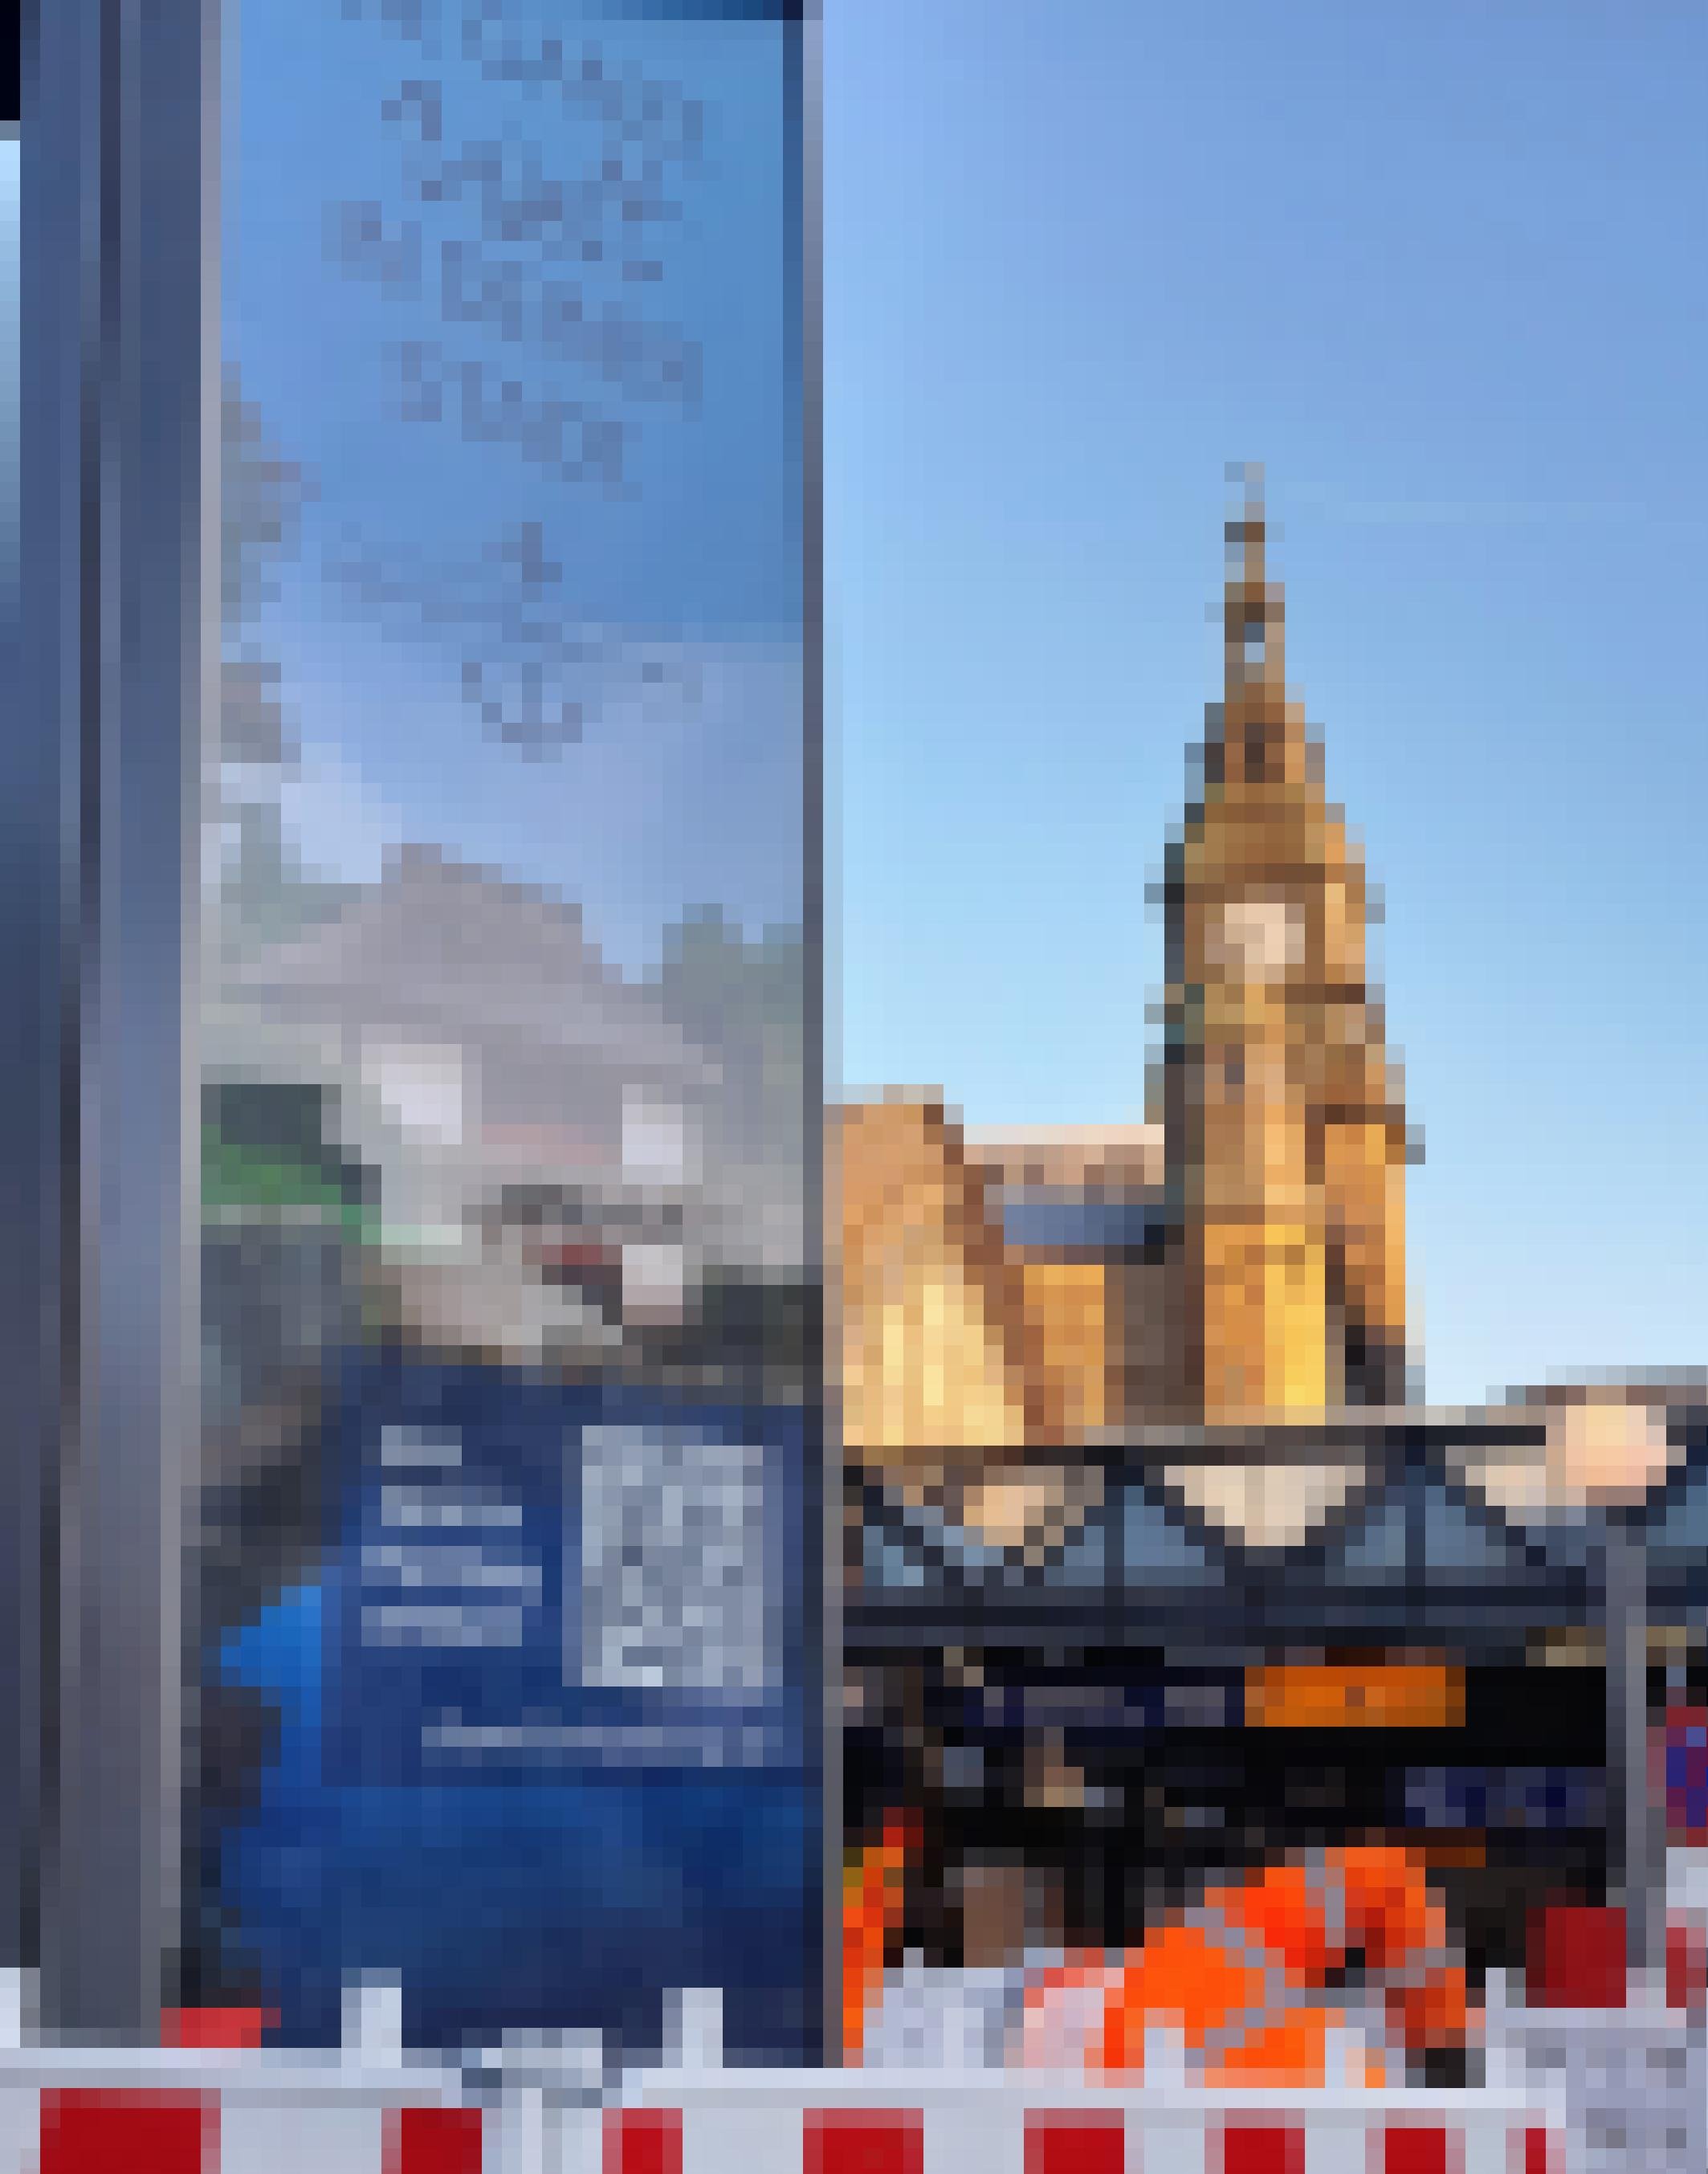 „Die ganze Welt in deiner Stadt – weil wir Hamburg sind“, lobhudelt eine futuristische Litfaßsäule vorm Ausgang Kirchenallee des Hauptbahnhofs, von dem ein stattlicher Turm mit Uhr zu sehen ist, welche etwa 7 Uhr 40 anzeigt.